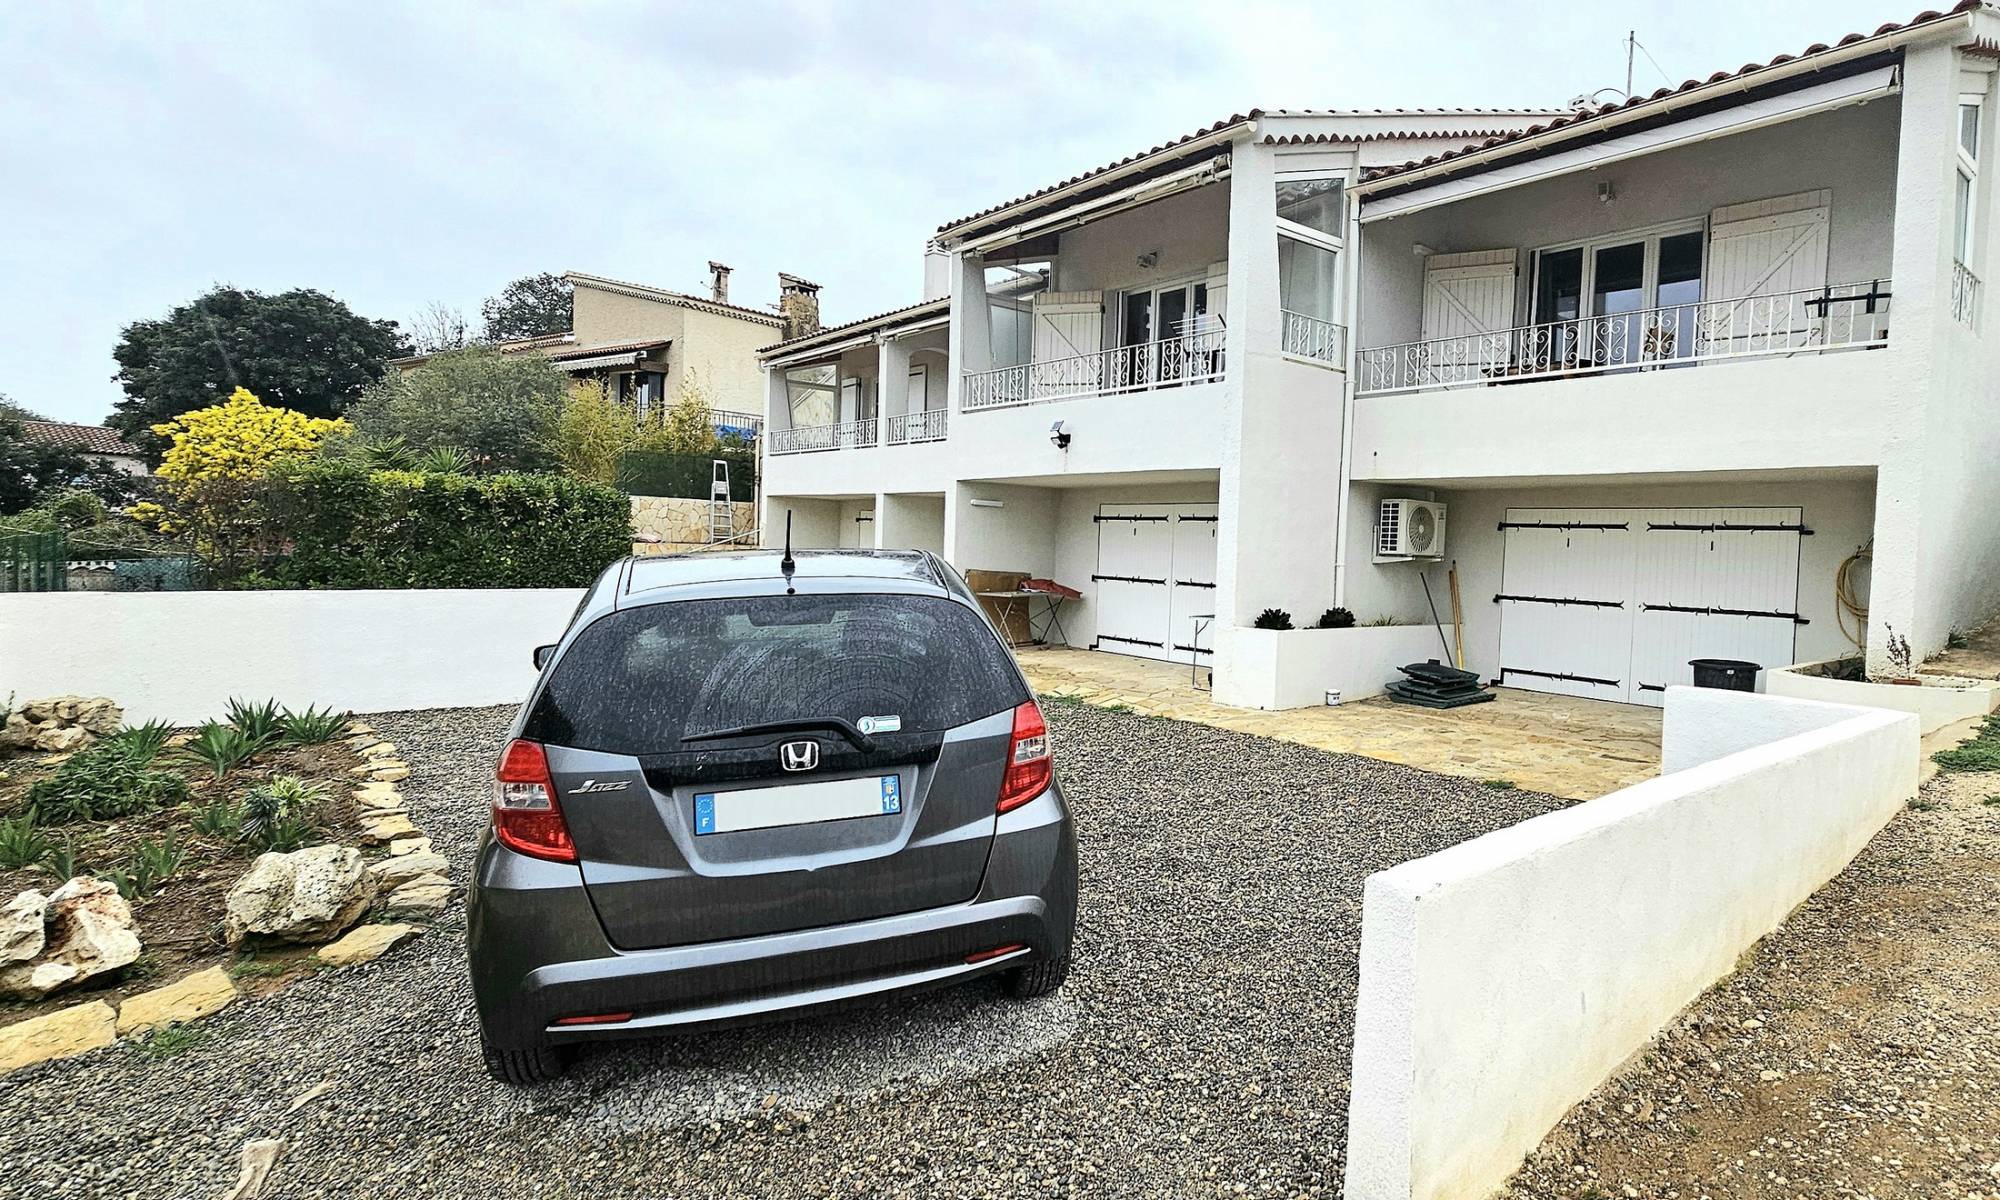 Villa club avec garage à vendre quartier le Rayolet sur la commune balnéaire de Six-Fours-les-Plages